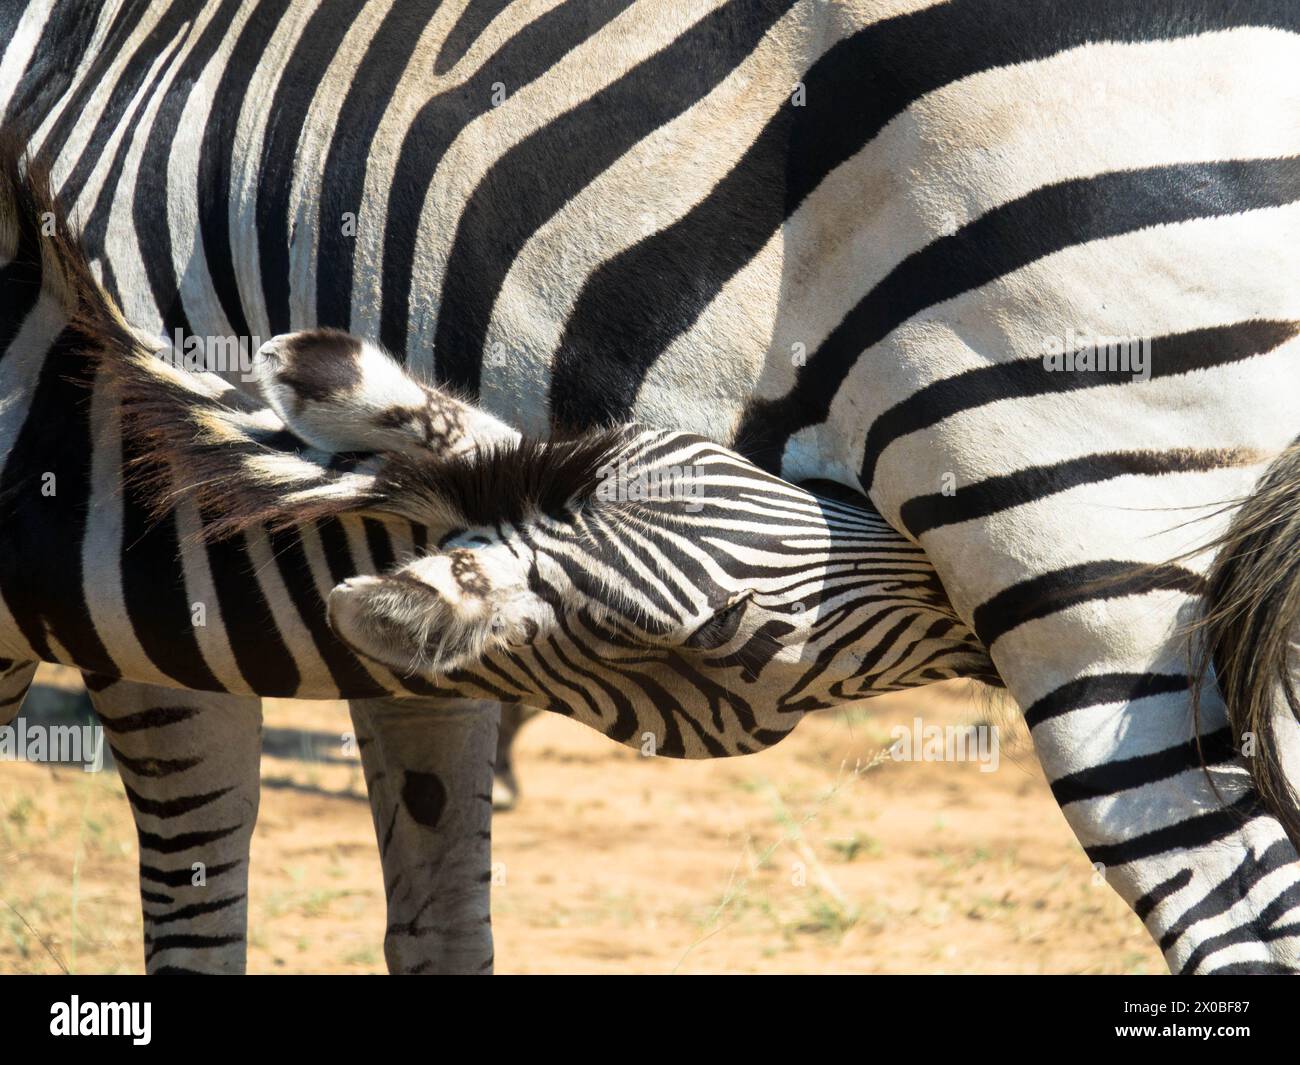 Das Zebra einer Mutter Grevys saugt ihr junges Fohlen in der Savanne. Okawango Delta, Botswana, Afrika. Nahaufnahme. Stockfoto